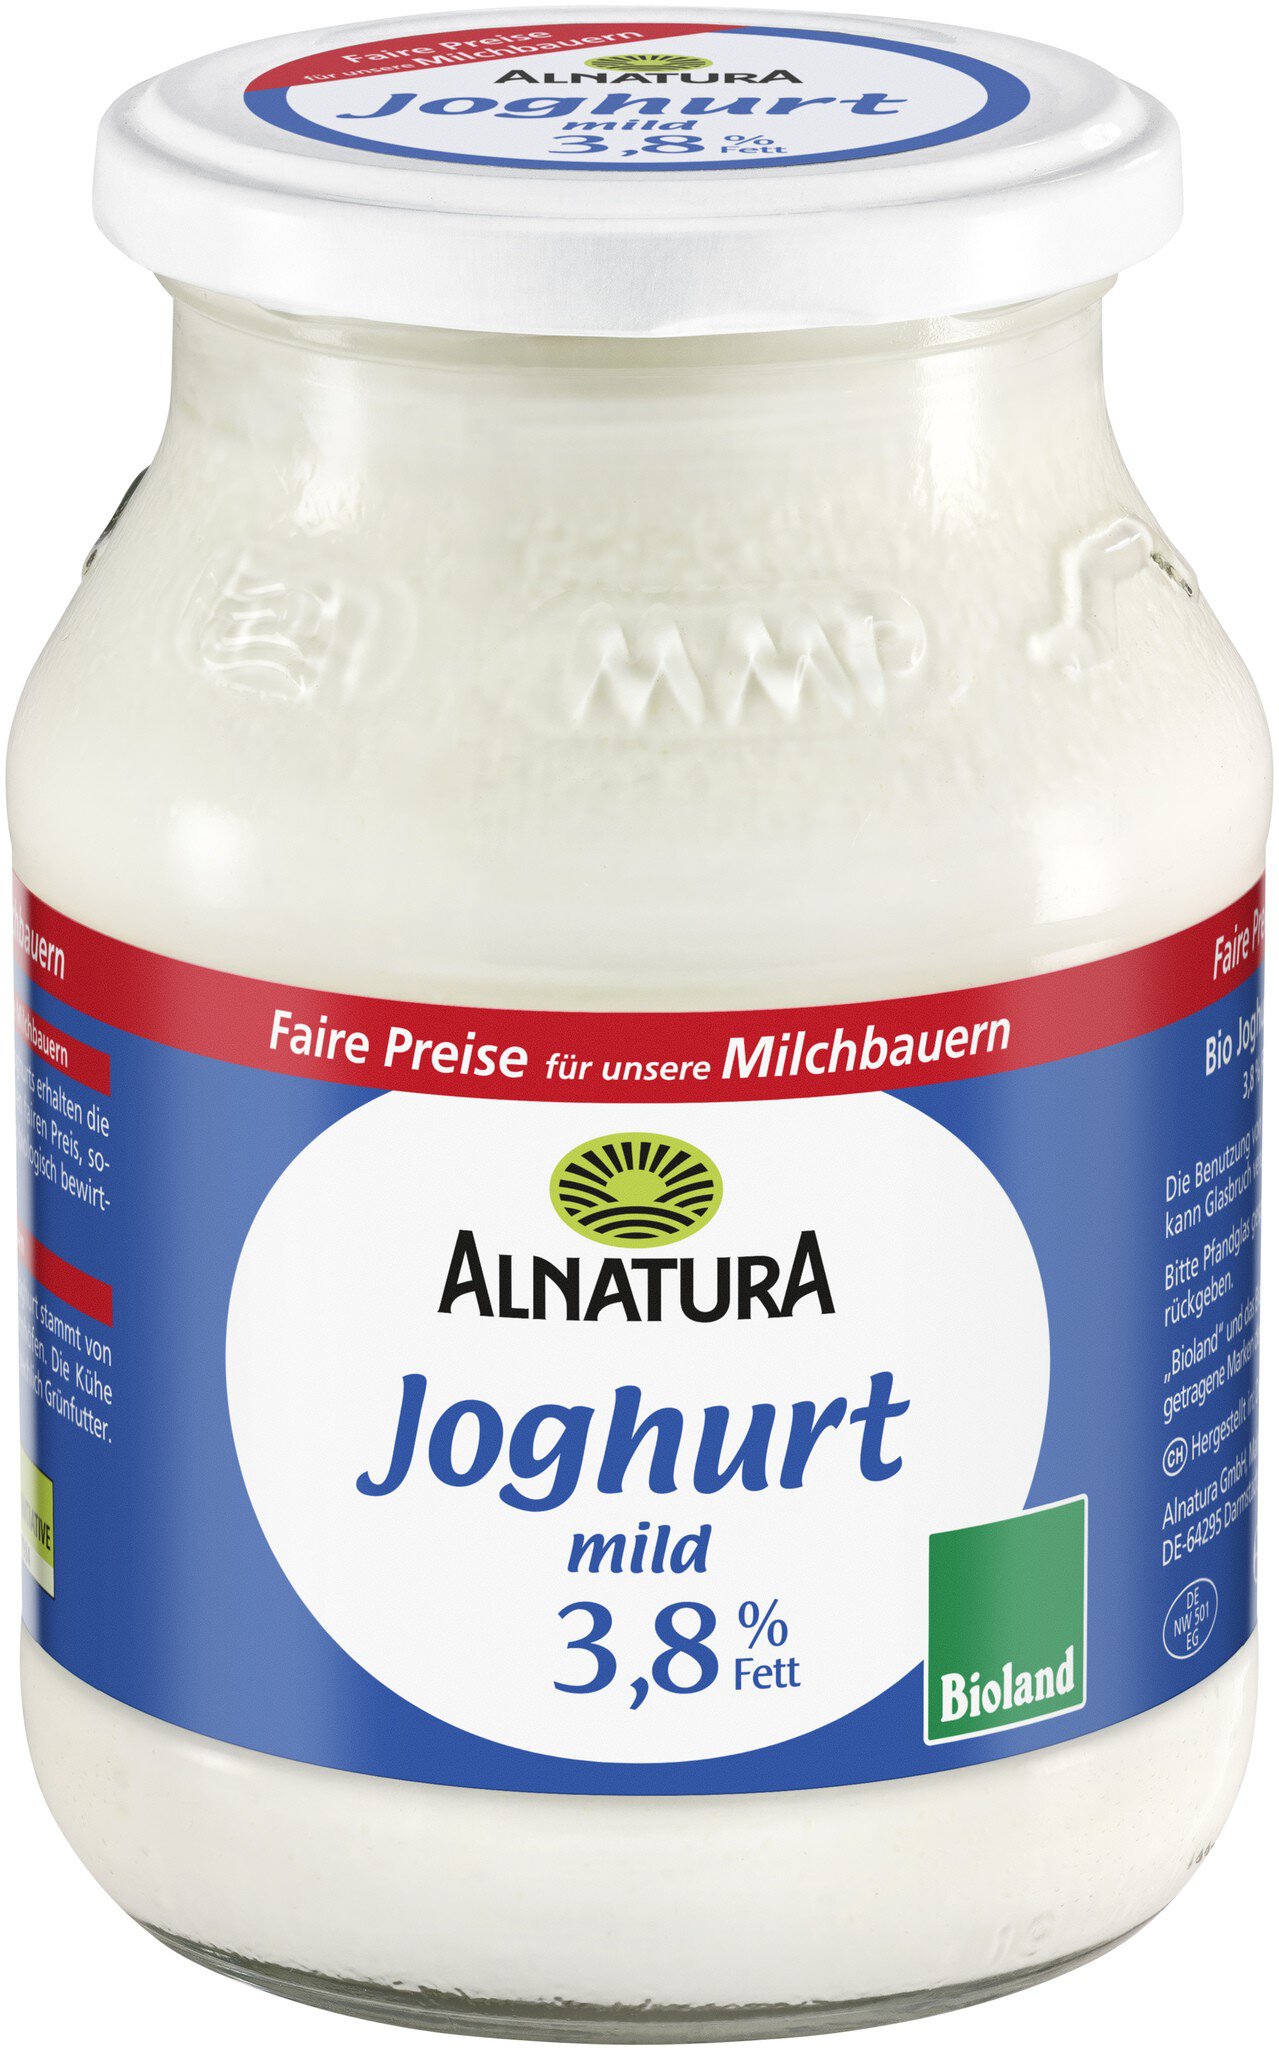 % Fett Alnatura Bio-Qualität in mild 3,8 g) (500 Joghurt von